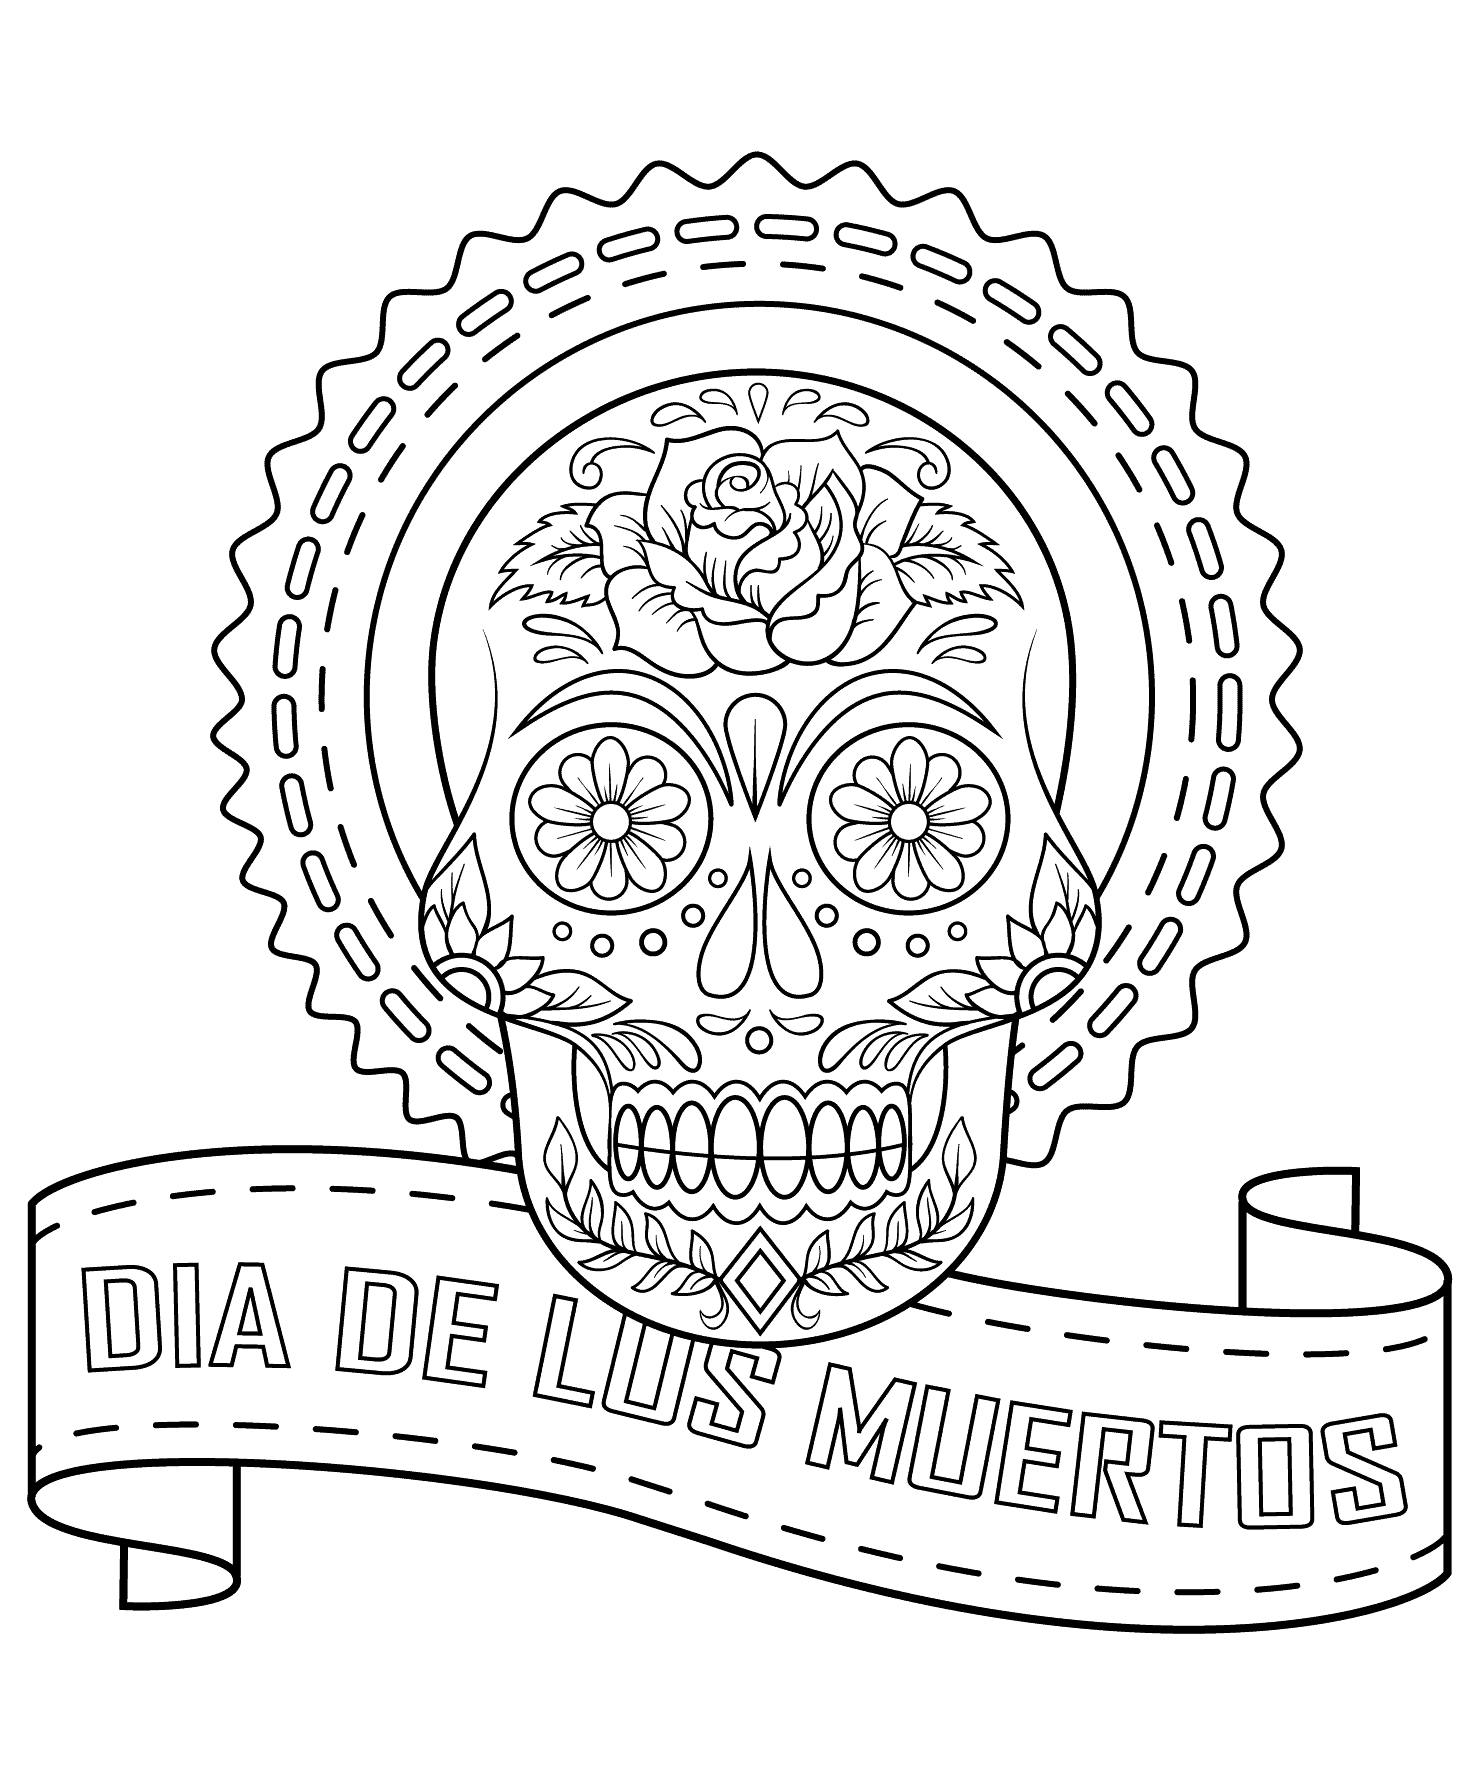 Free Dia De Los Muertos Coloring Pages